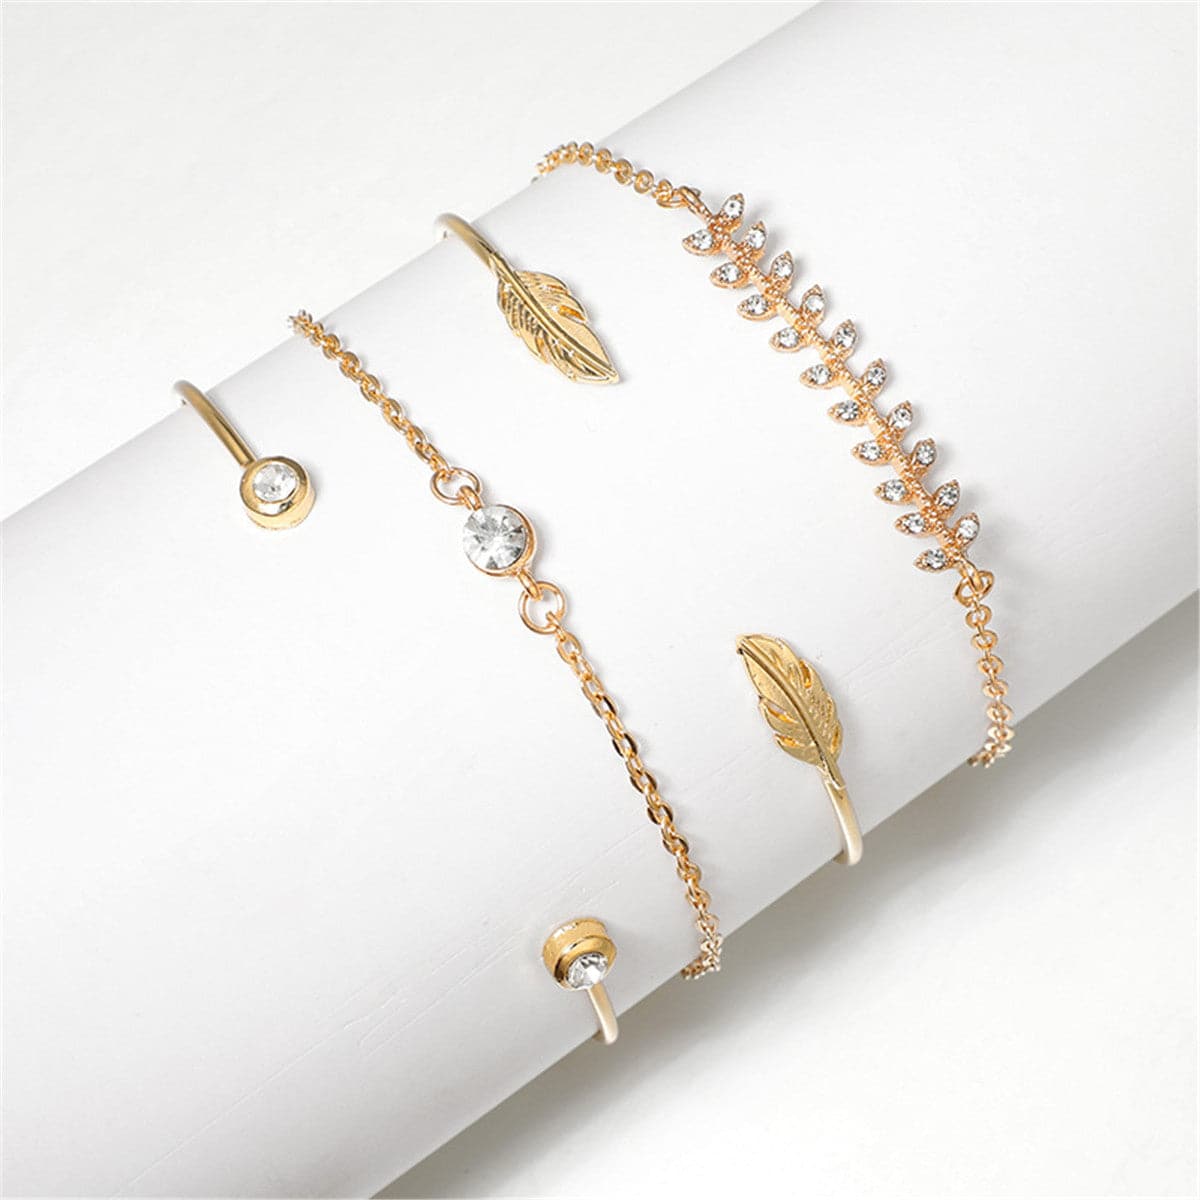 Cubic Zirconia & 18K Gold-Plated Leaf Charm Bracelet Set